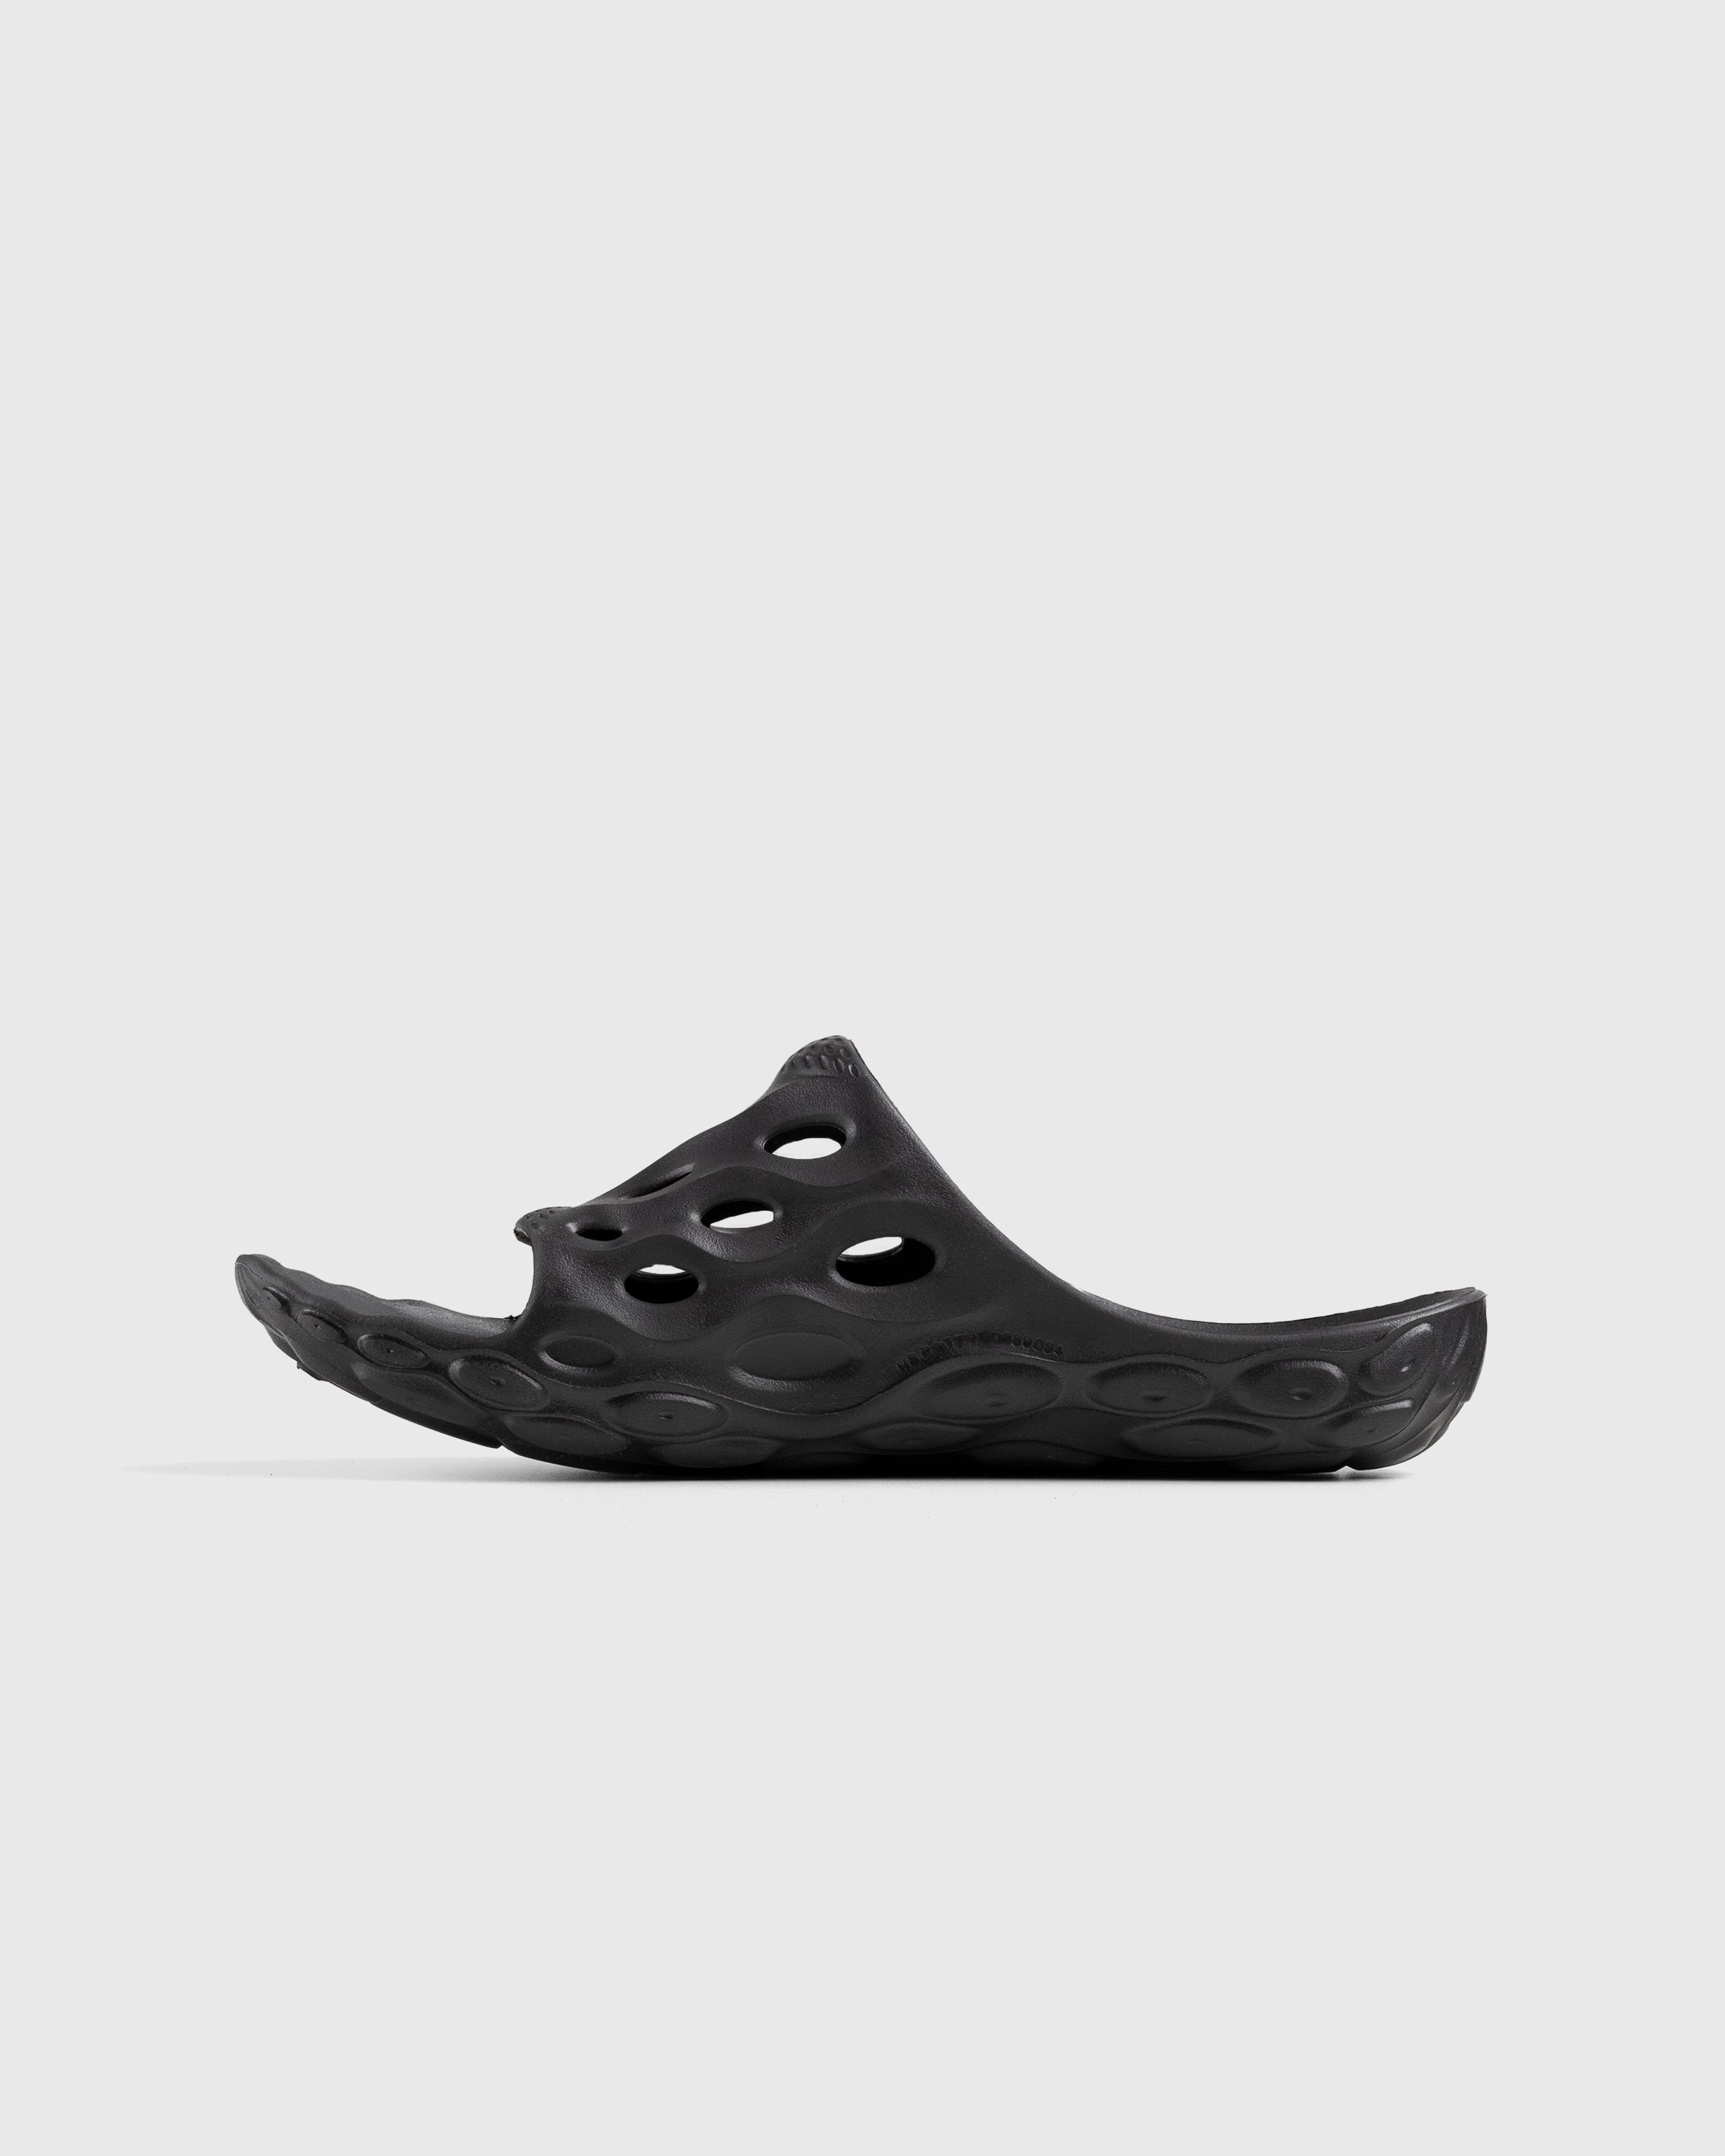 Merrell - Hydro Slide Black/Grey - Footwear - Black - Image 2